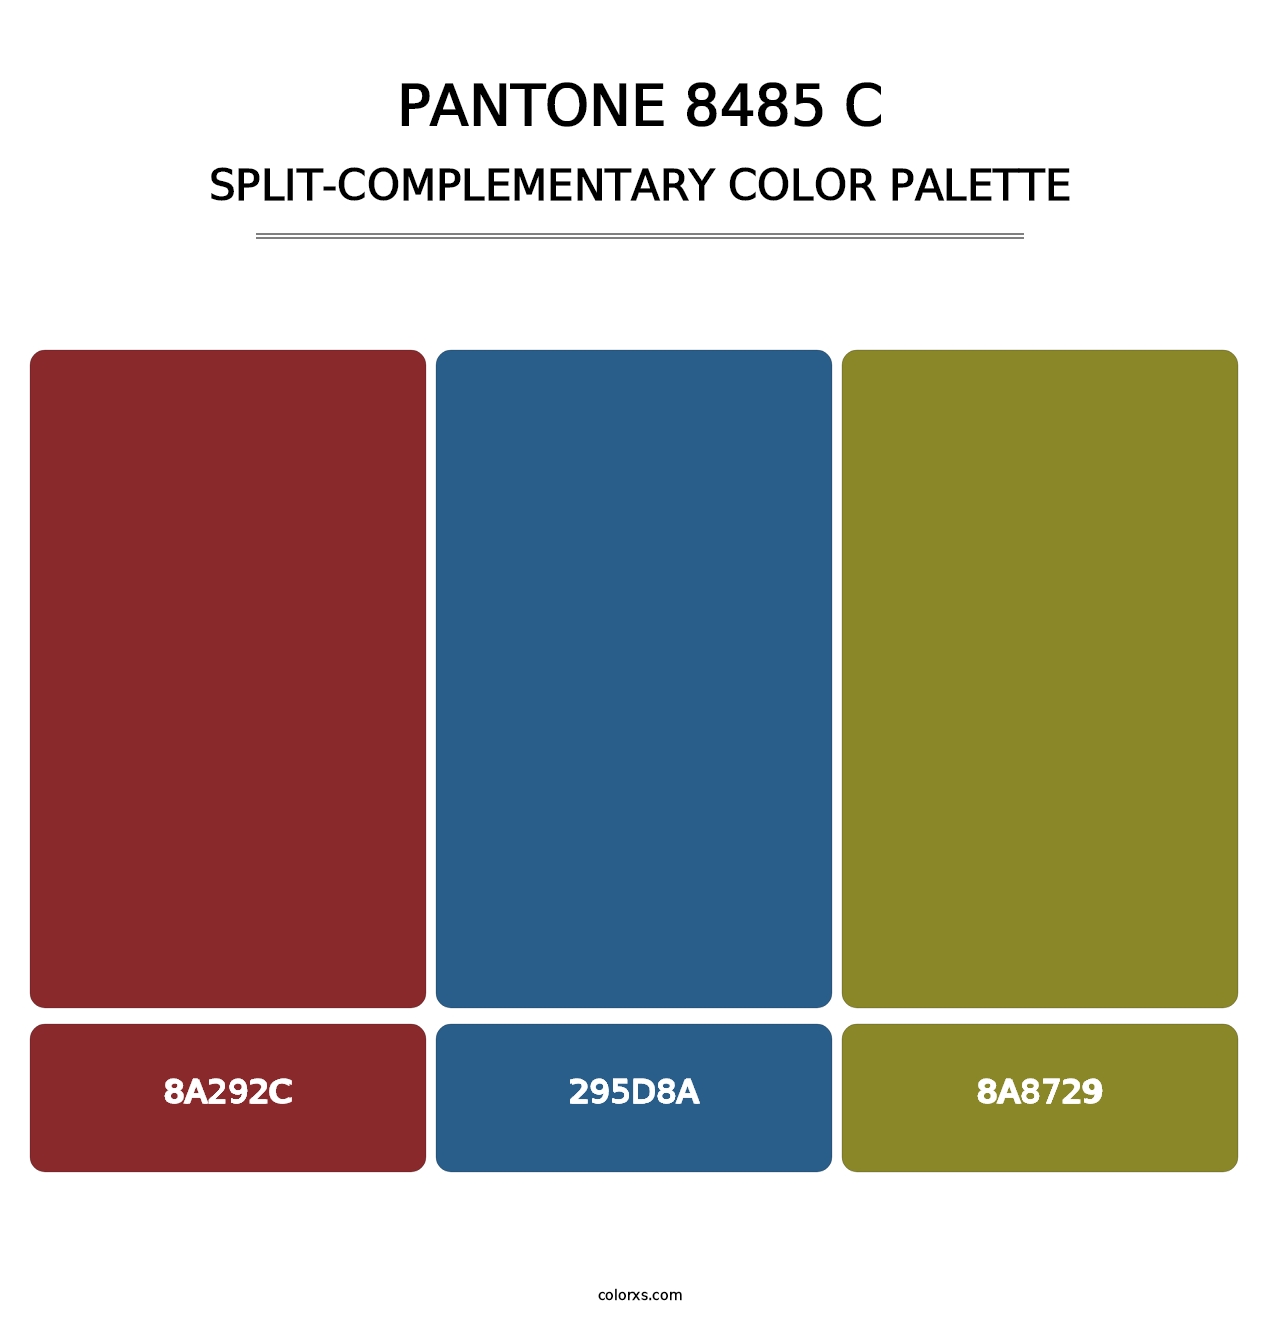 PANTONE 8485 C - Split-Complementary Color Palette